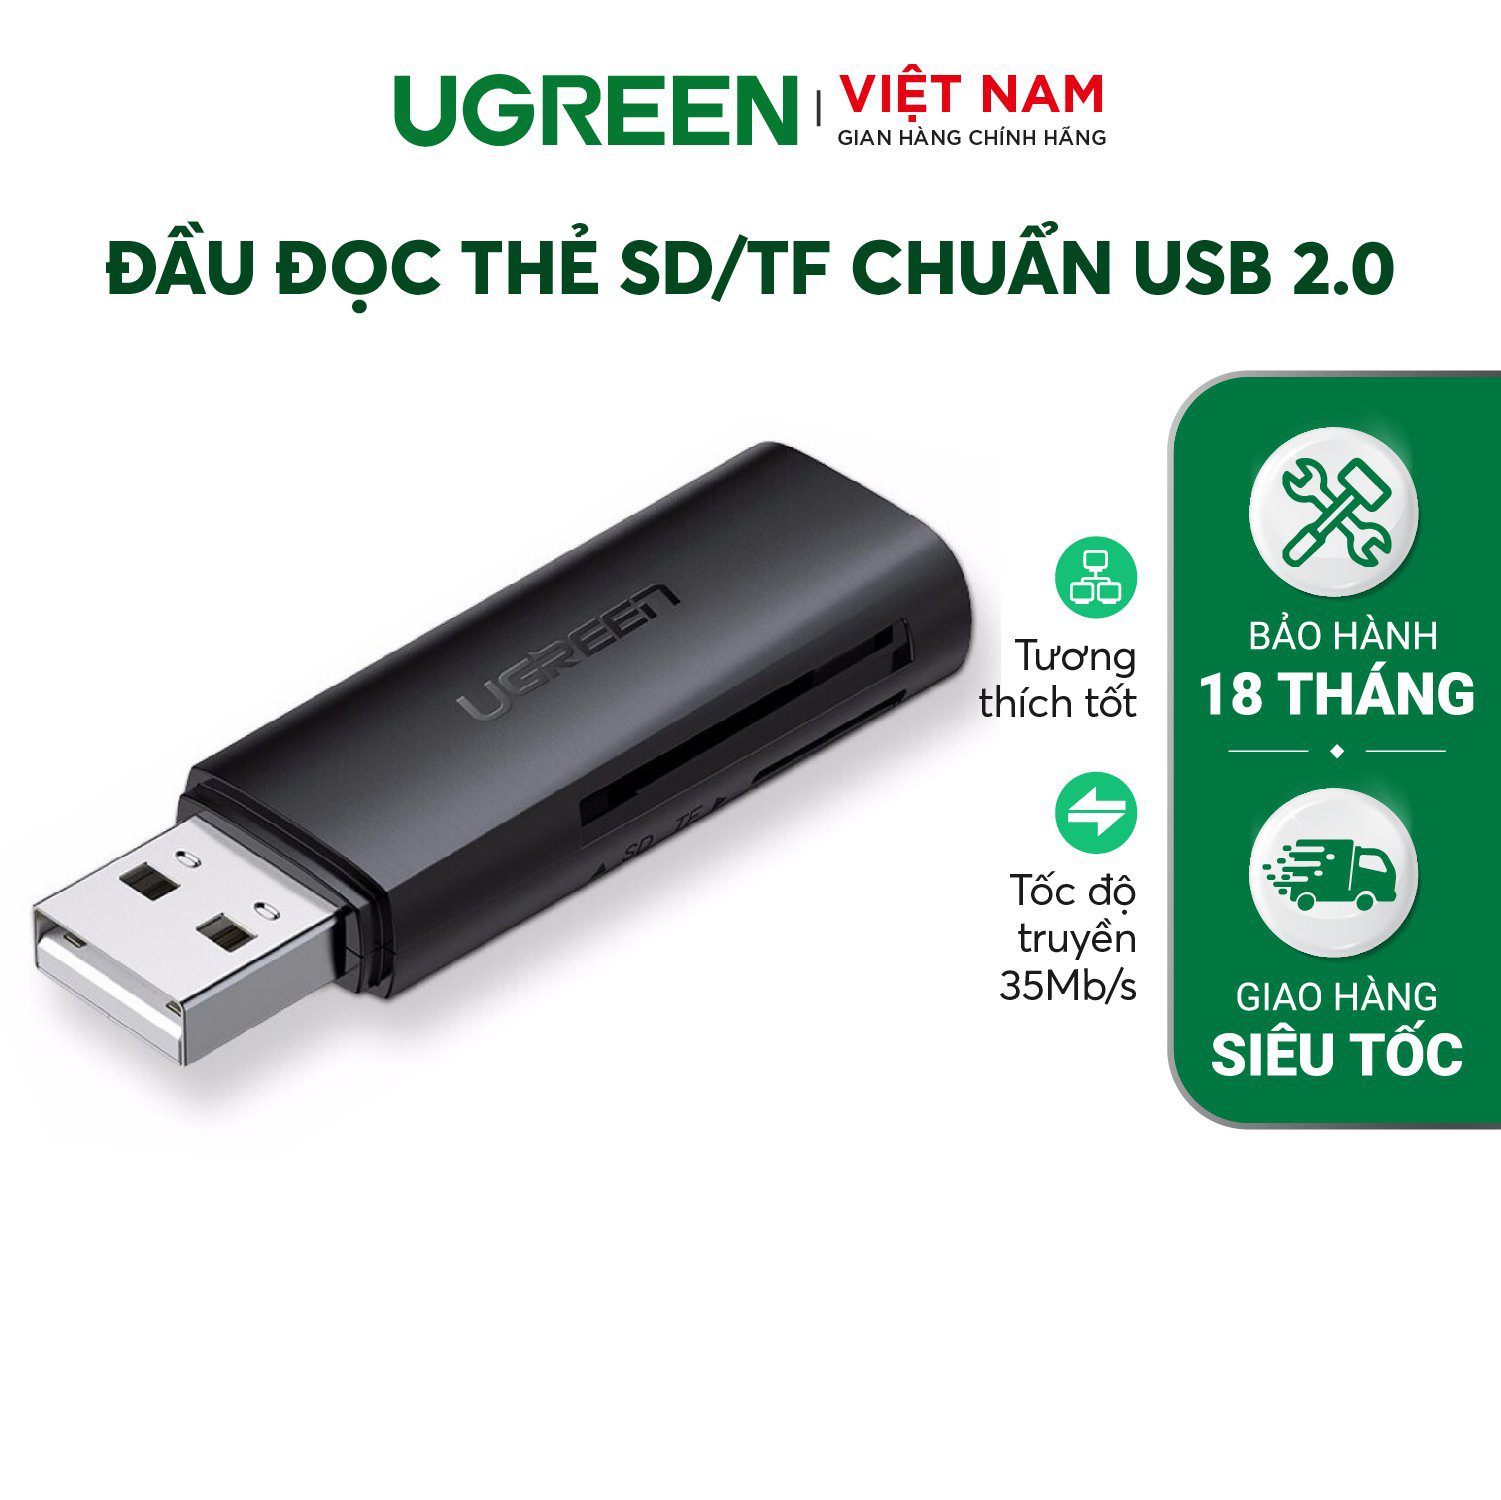 Đầu đọc thẻ nhớ UGREEN CM264 Đọc thẻ SD/TF chuẩn USB 2.0 - Tốc độ truyền 480Mbps Hỗ trợ tối đa lên đến 512GB – Ugreen Việt Nam